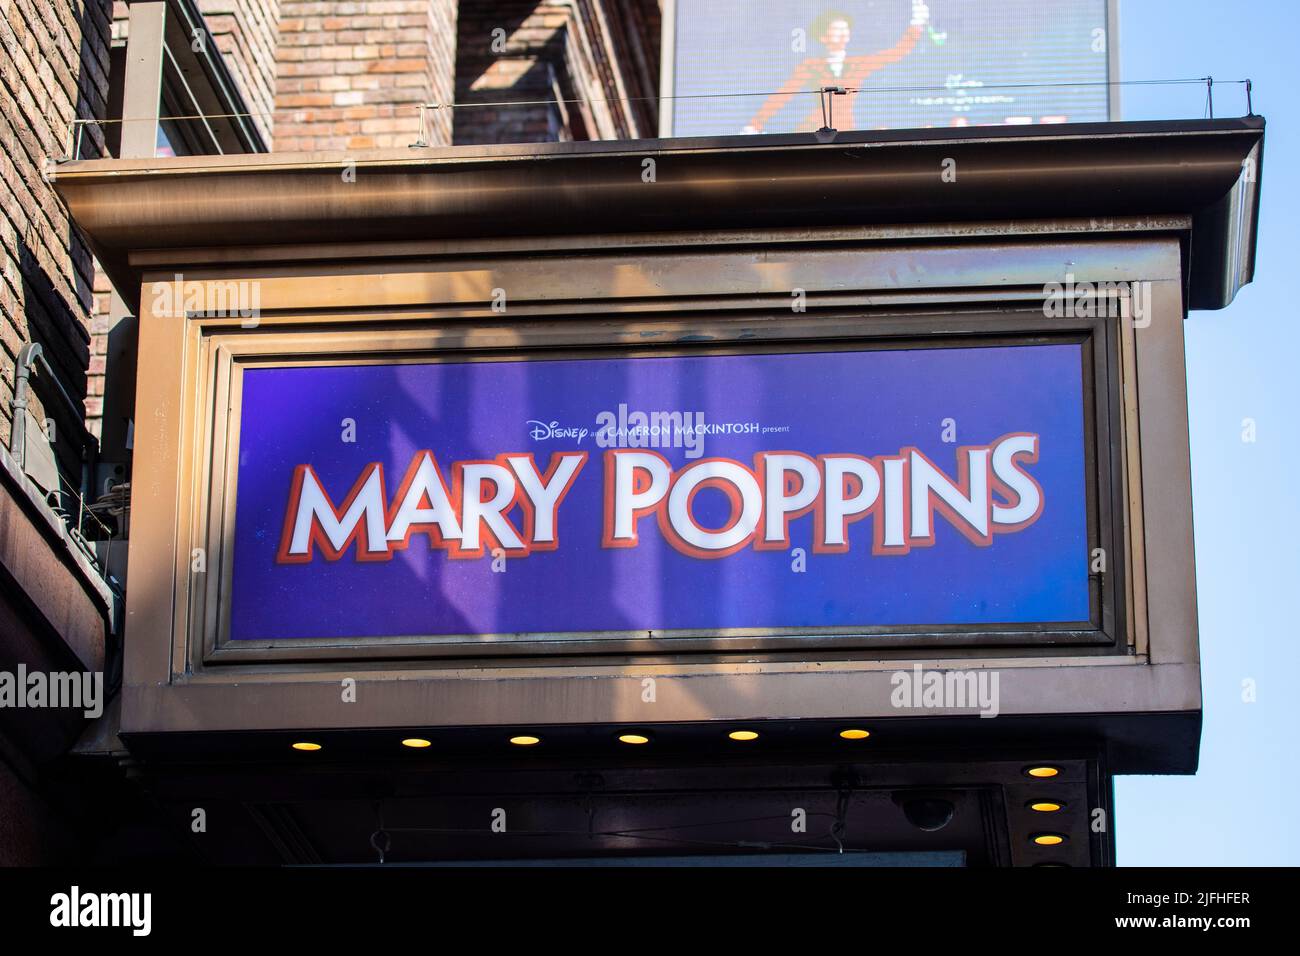 Londres, Royaume-Uni - 8 mars 2022: Mary Poppins The musical, étant annoncé à l'extérieur du Prince Edward Theatre à Londres, Royaume-Uni. Banque D'Images